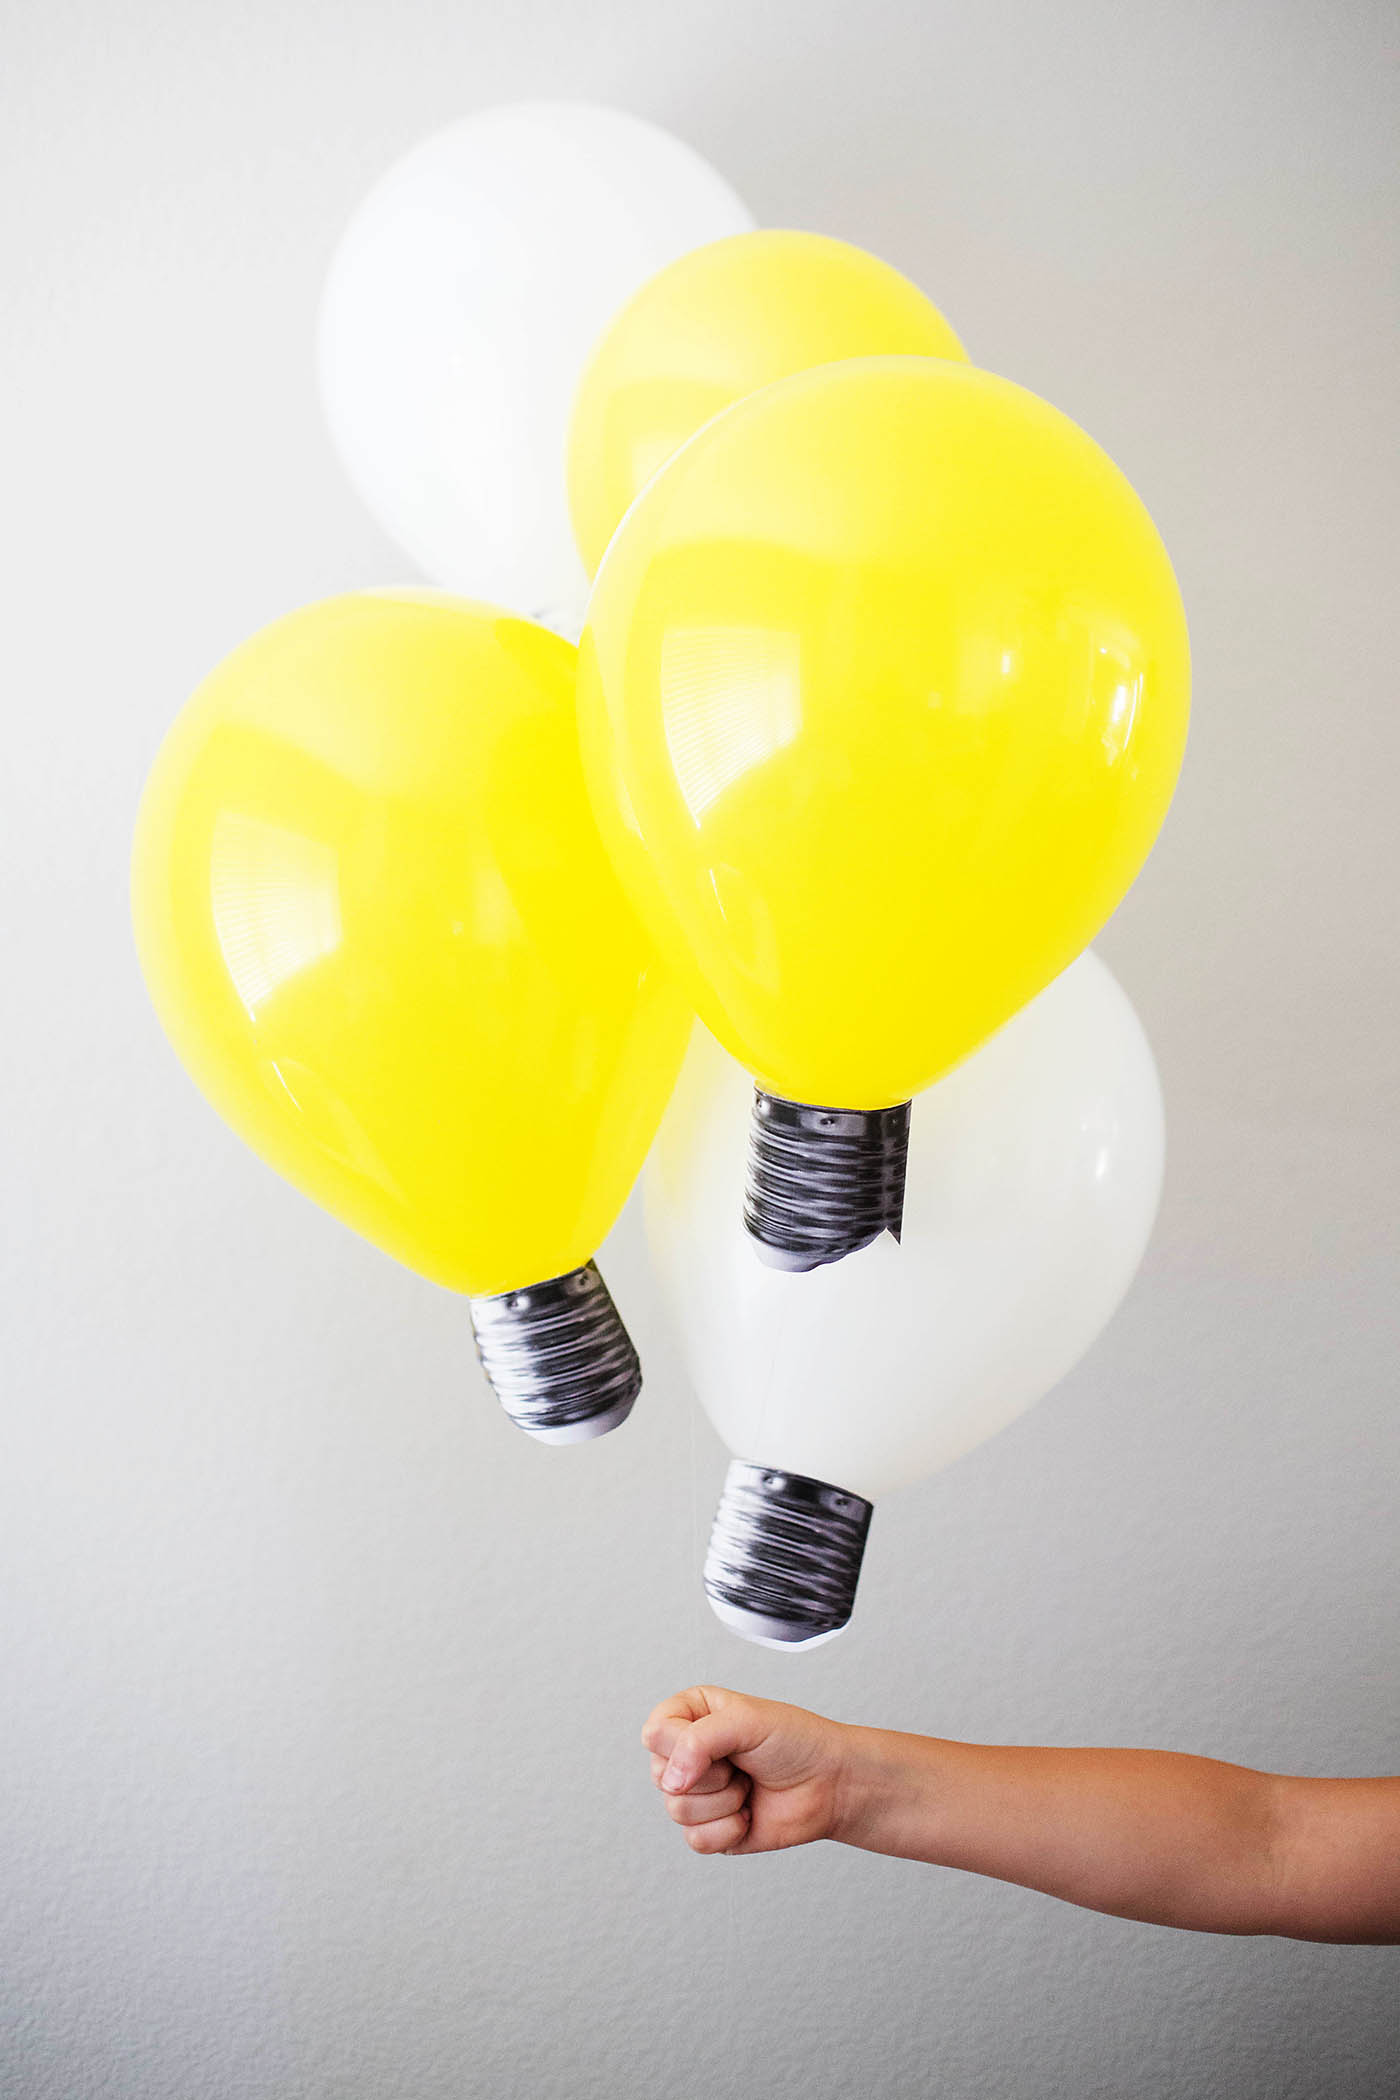 aftb-lightbulb-balloon-8 — All for the